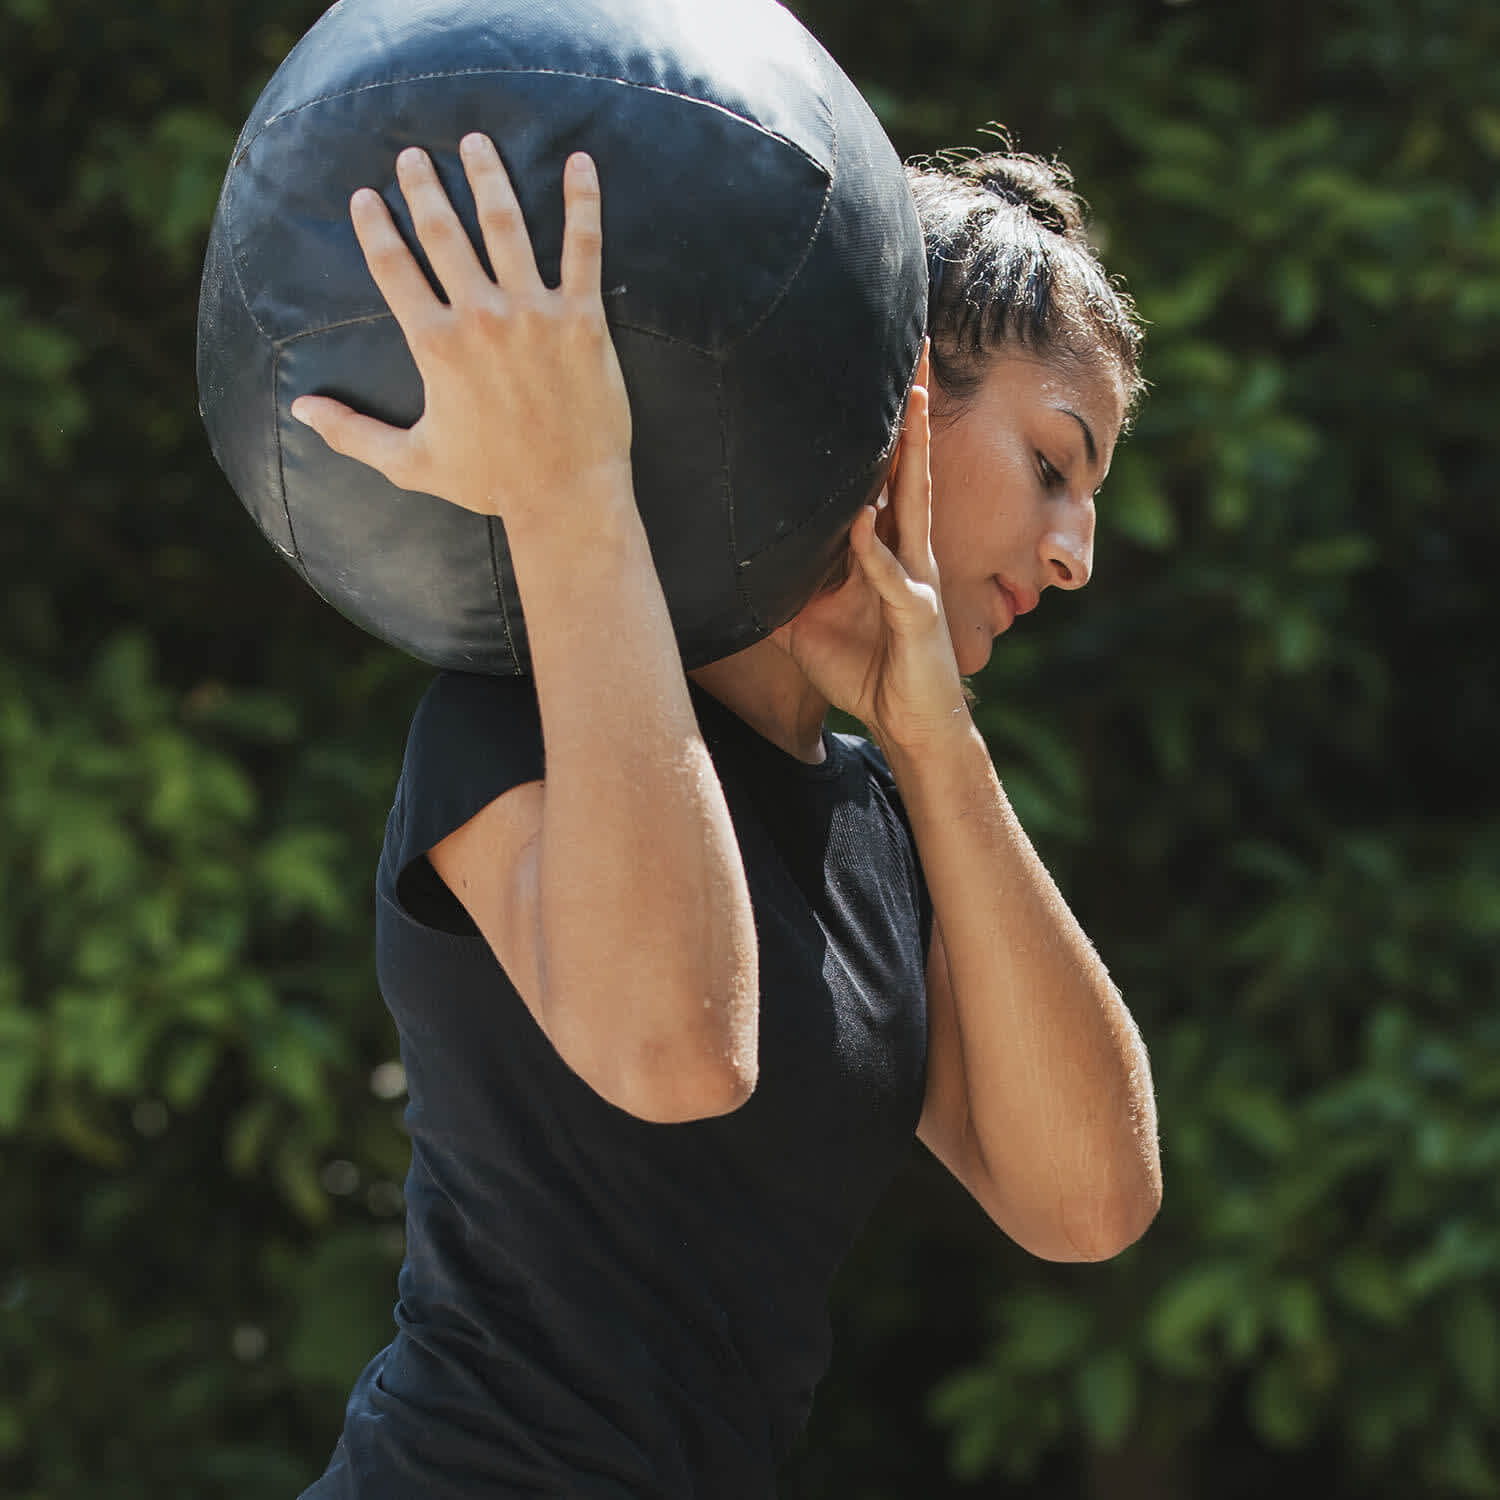 Mulher carrega bola no ombro direito durante treinamento